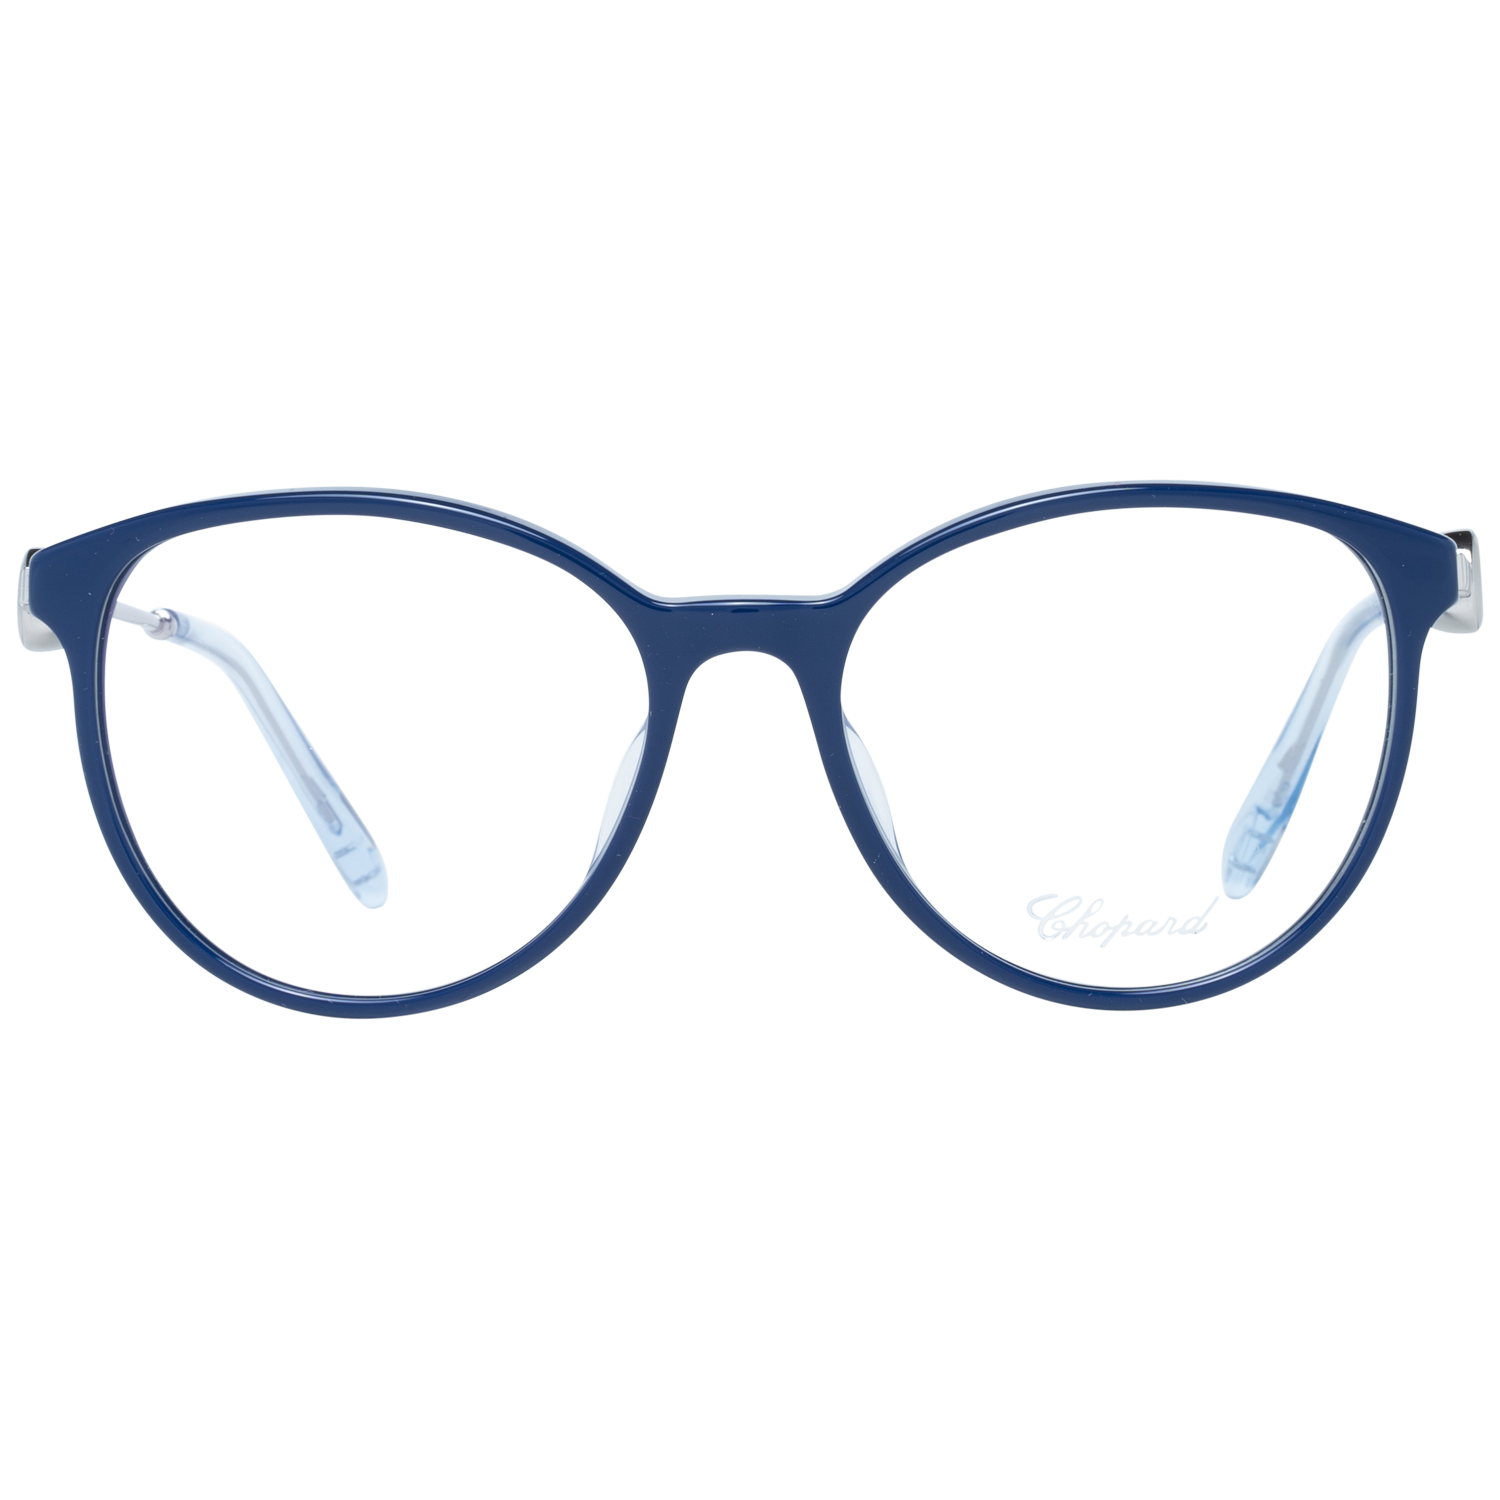 Chopard Frames Chopard Glasses Frames VCH289S 09QL 52mm Eyeglasses Eyewear UK USA Australia 